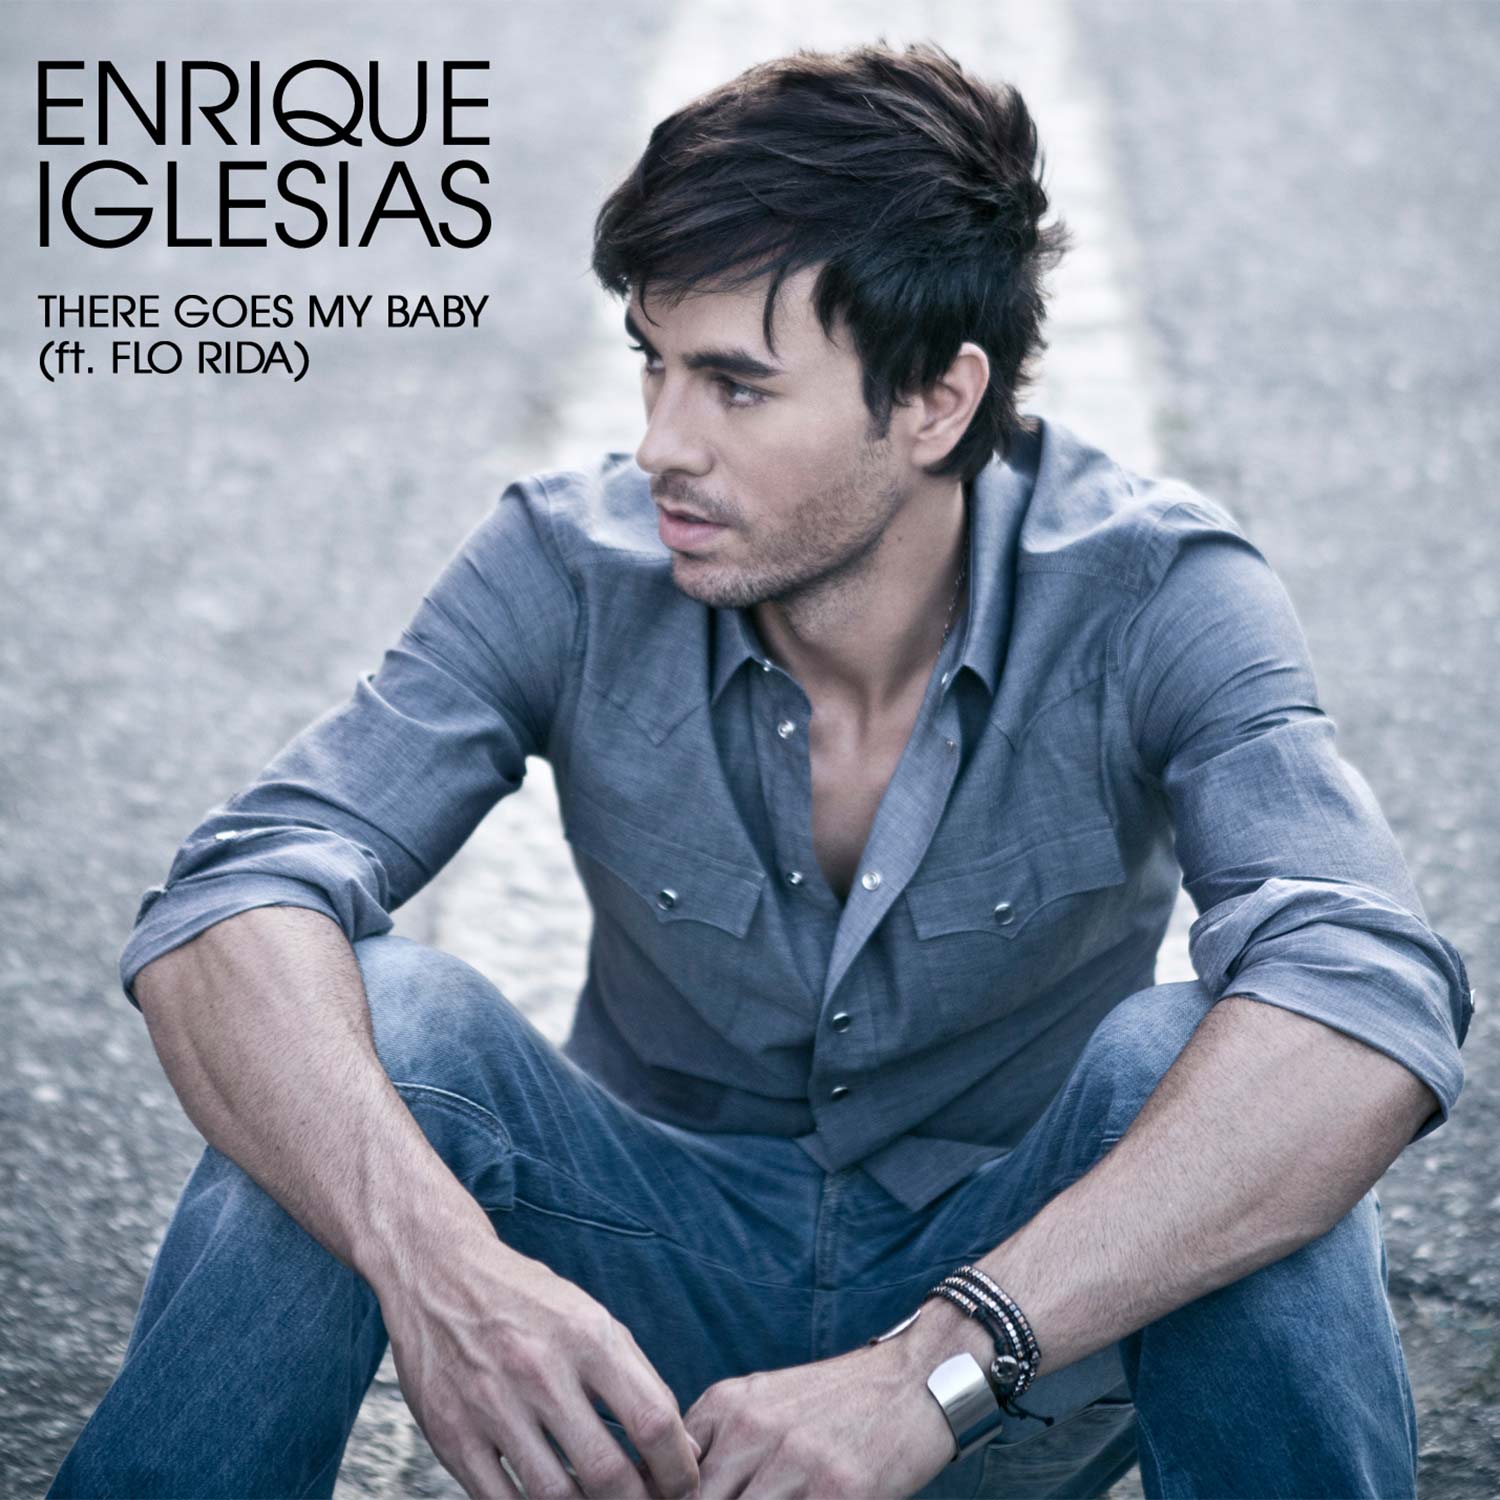 Enrique Iglesias con Flo Rida: There goes my baby, la portada de la canción